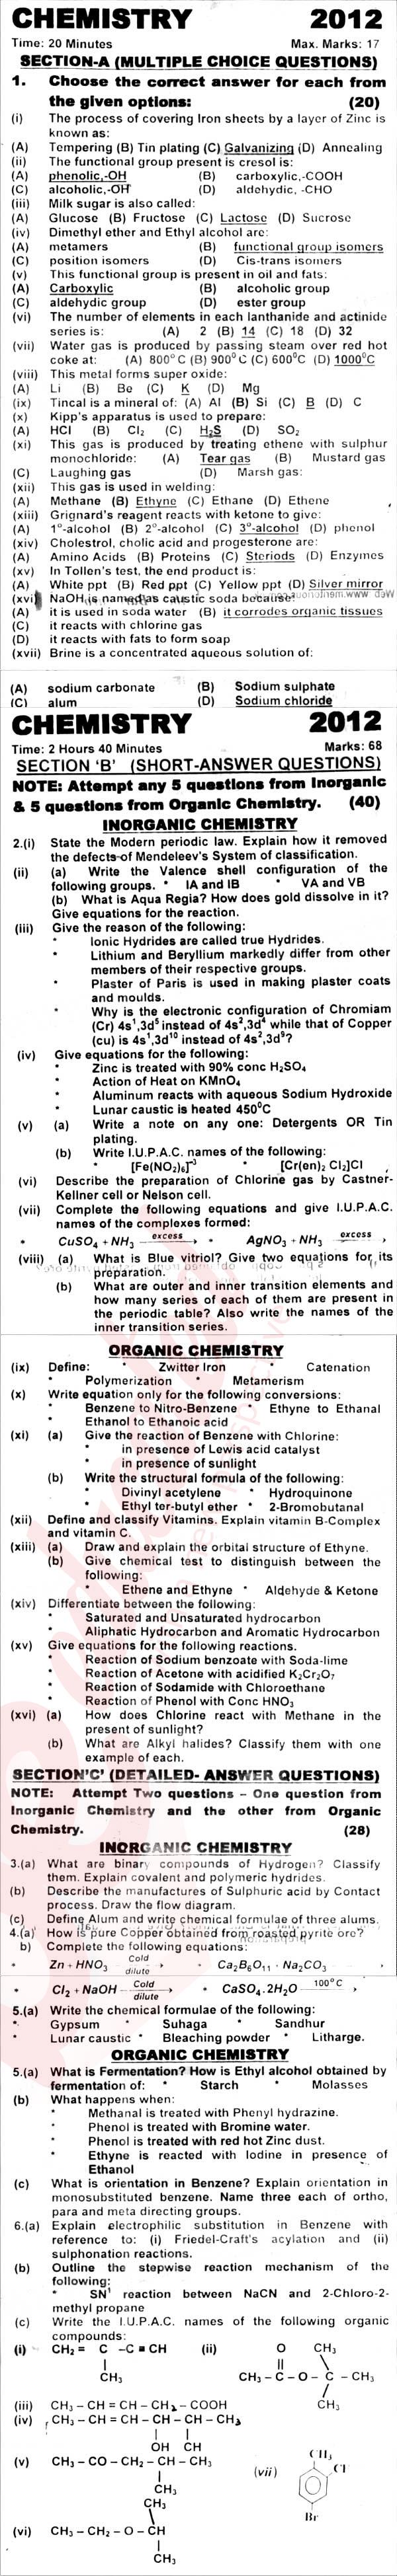 Chemistry FSC Part 2 Past Paper Group 1 KPBTE 2012